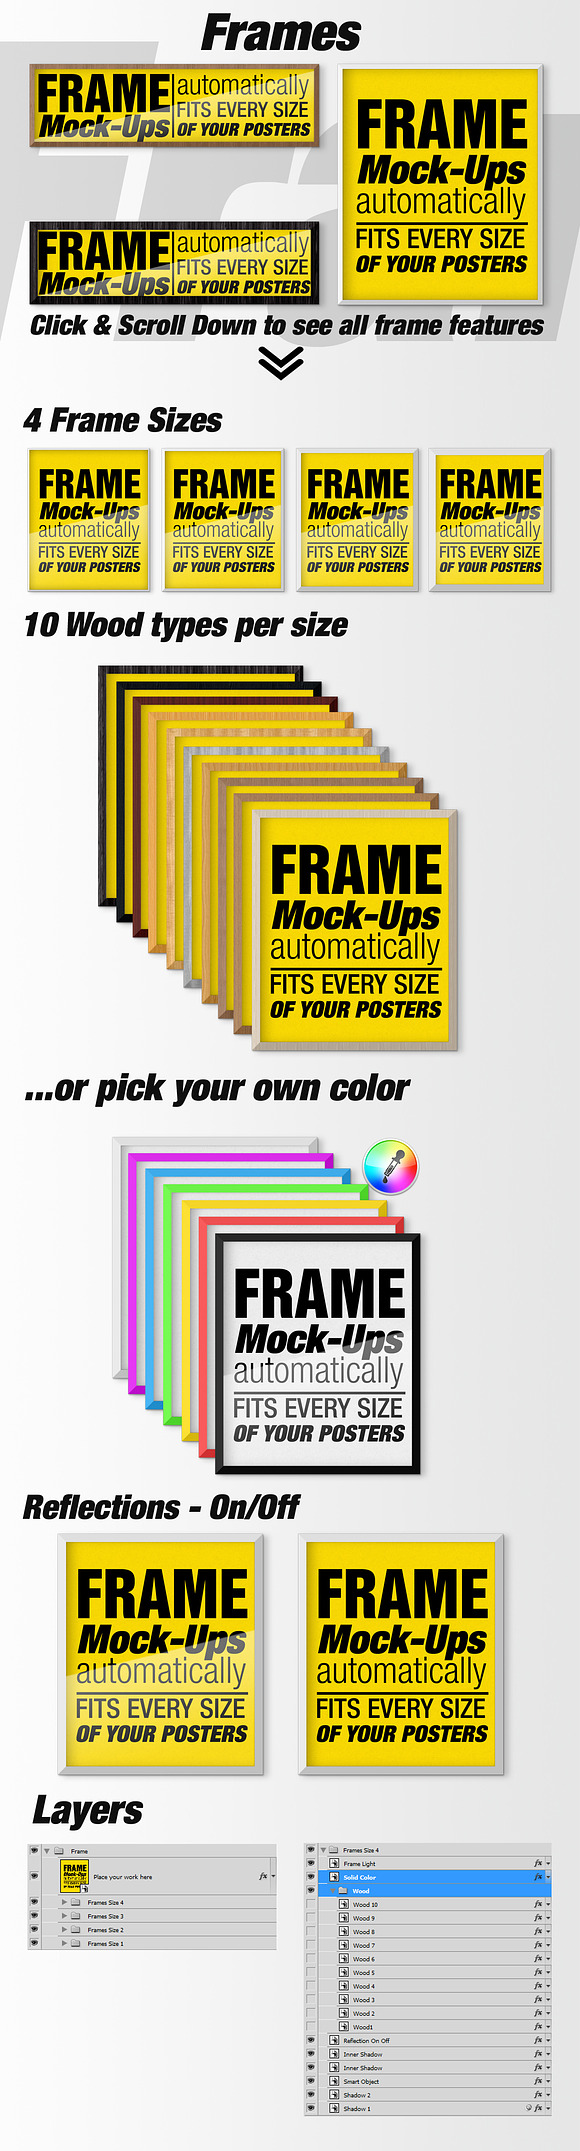 Canvas Mockups - Frames Mockups v 50 in Print Mockups - product preview 6